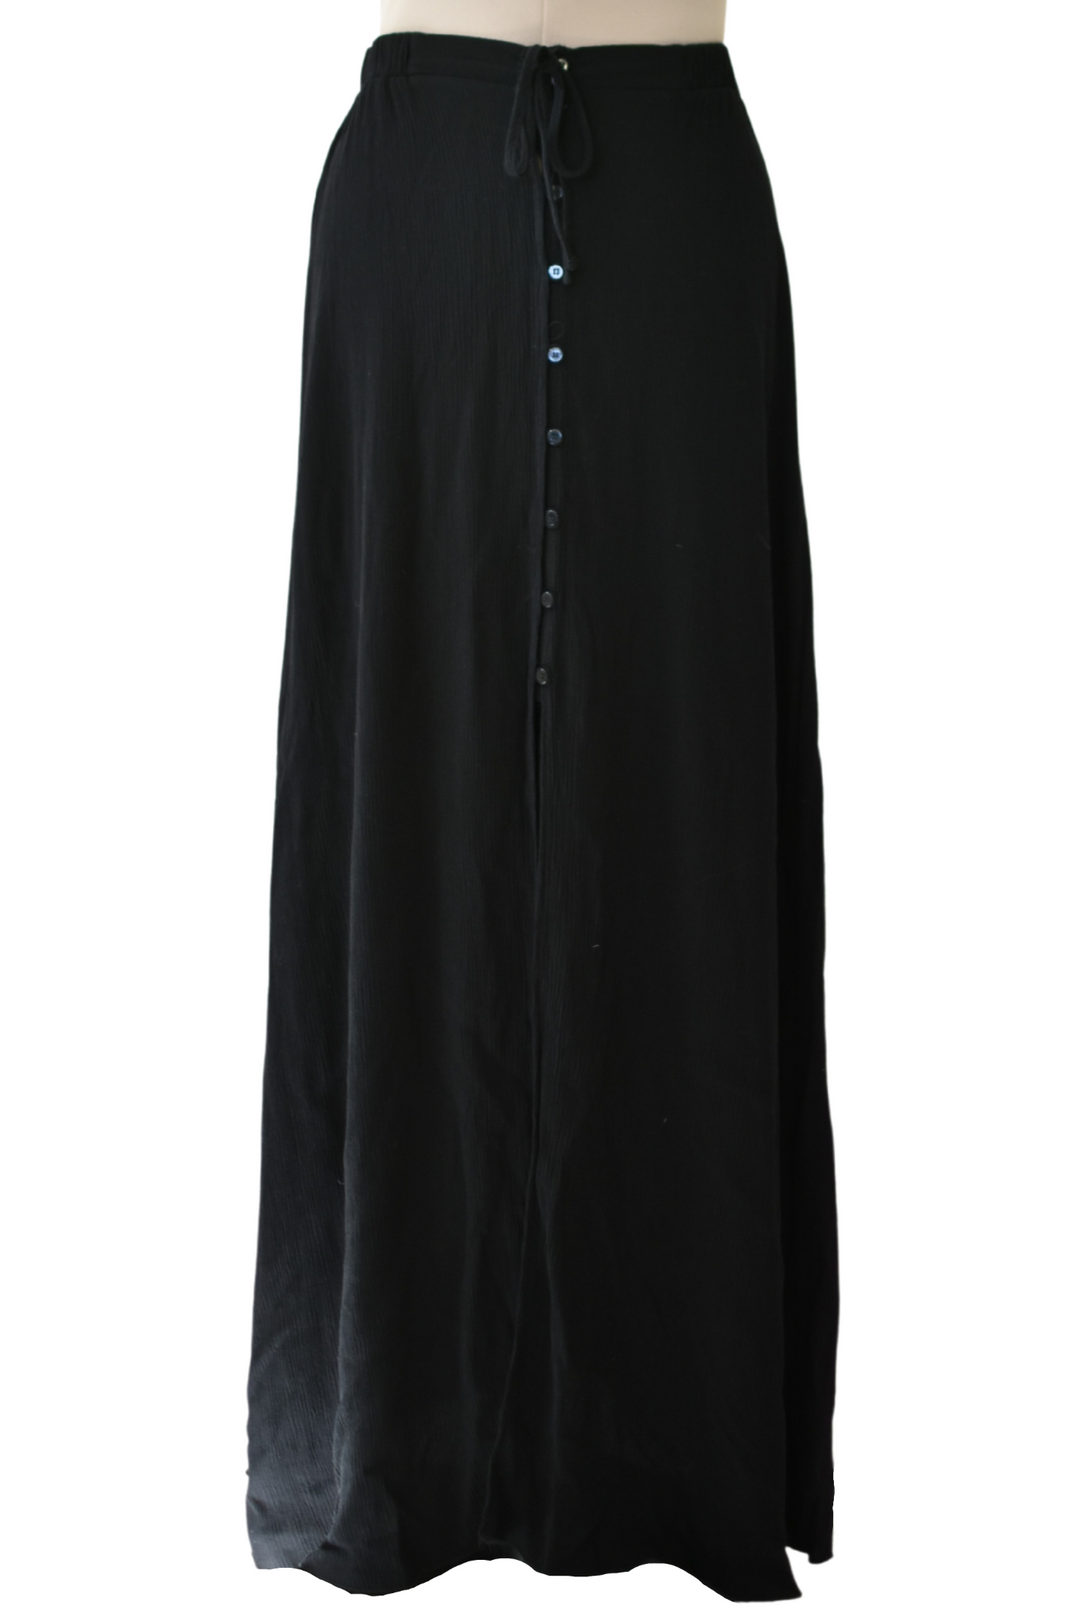 Long Black Button Skirt